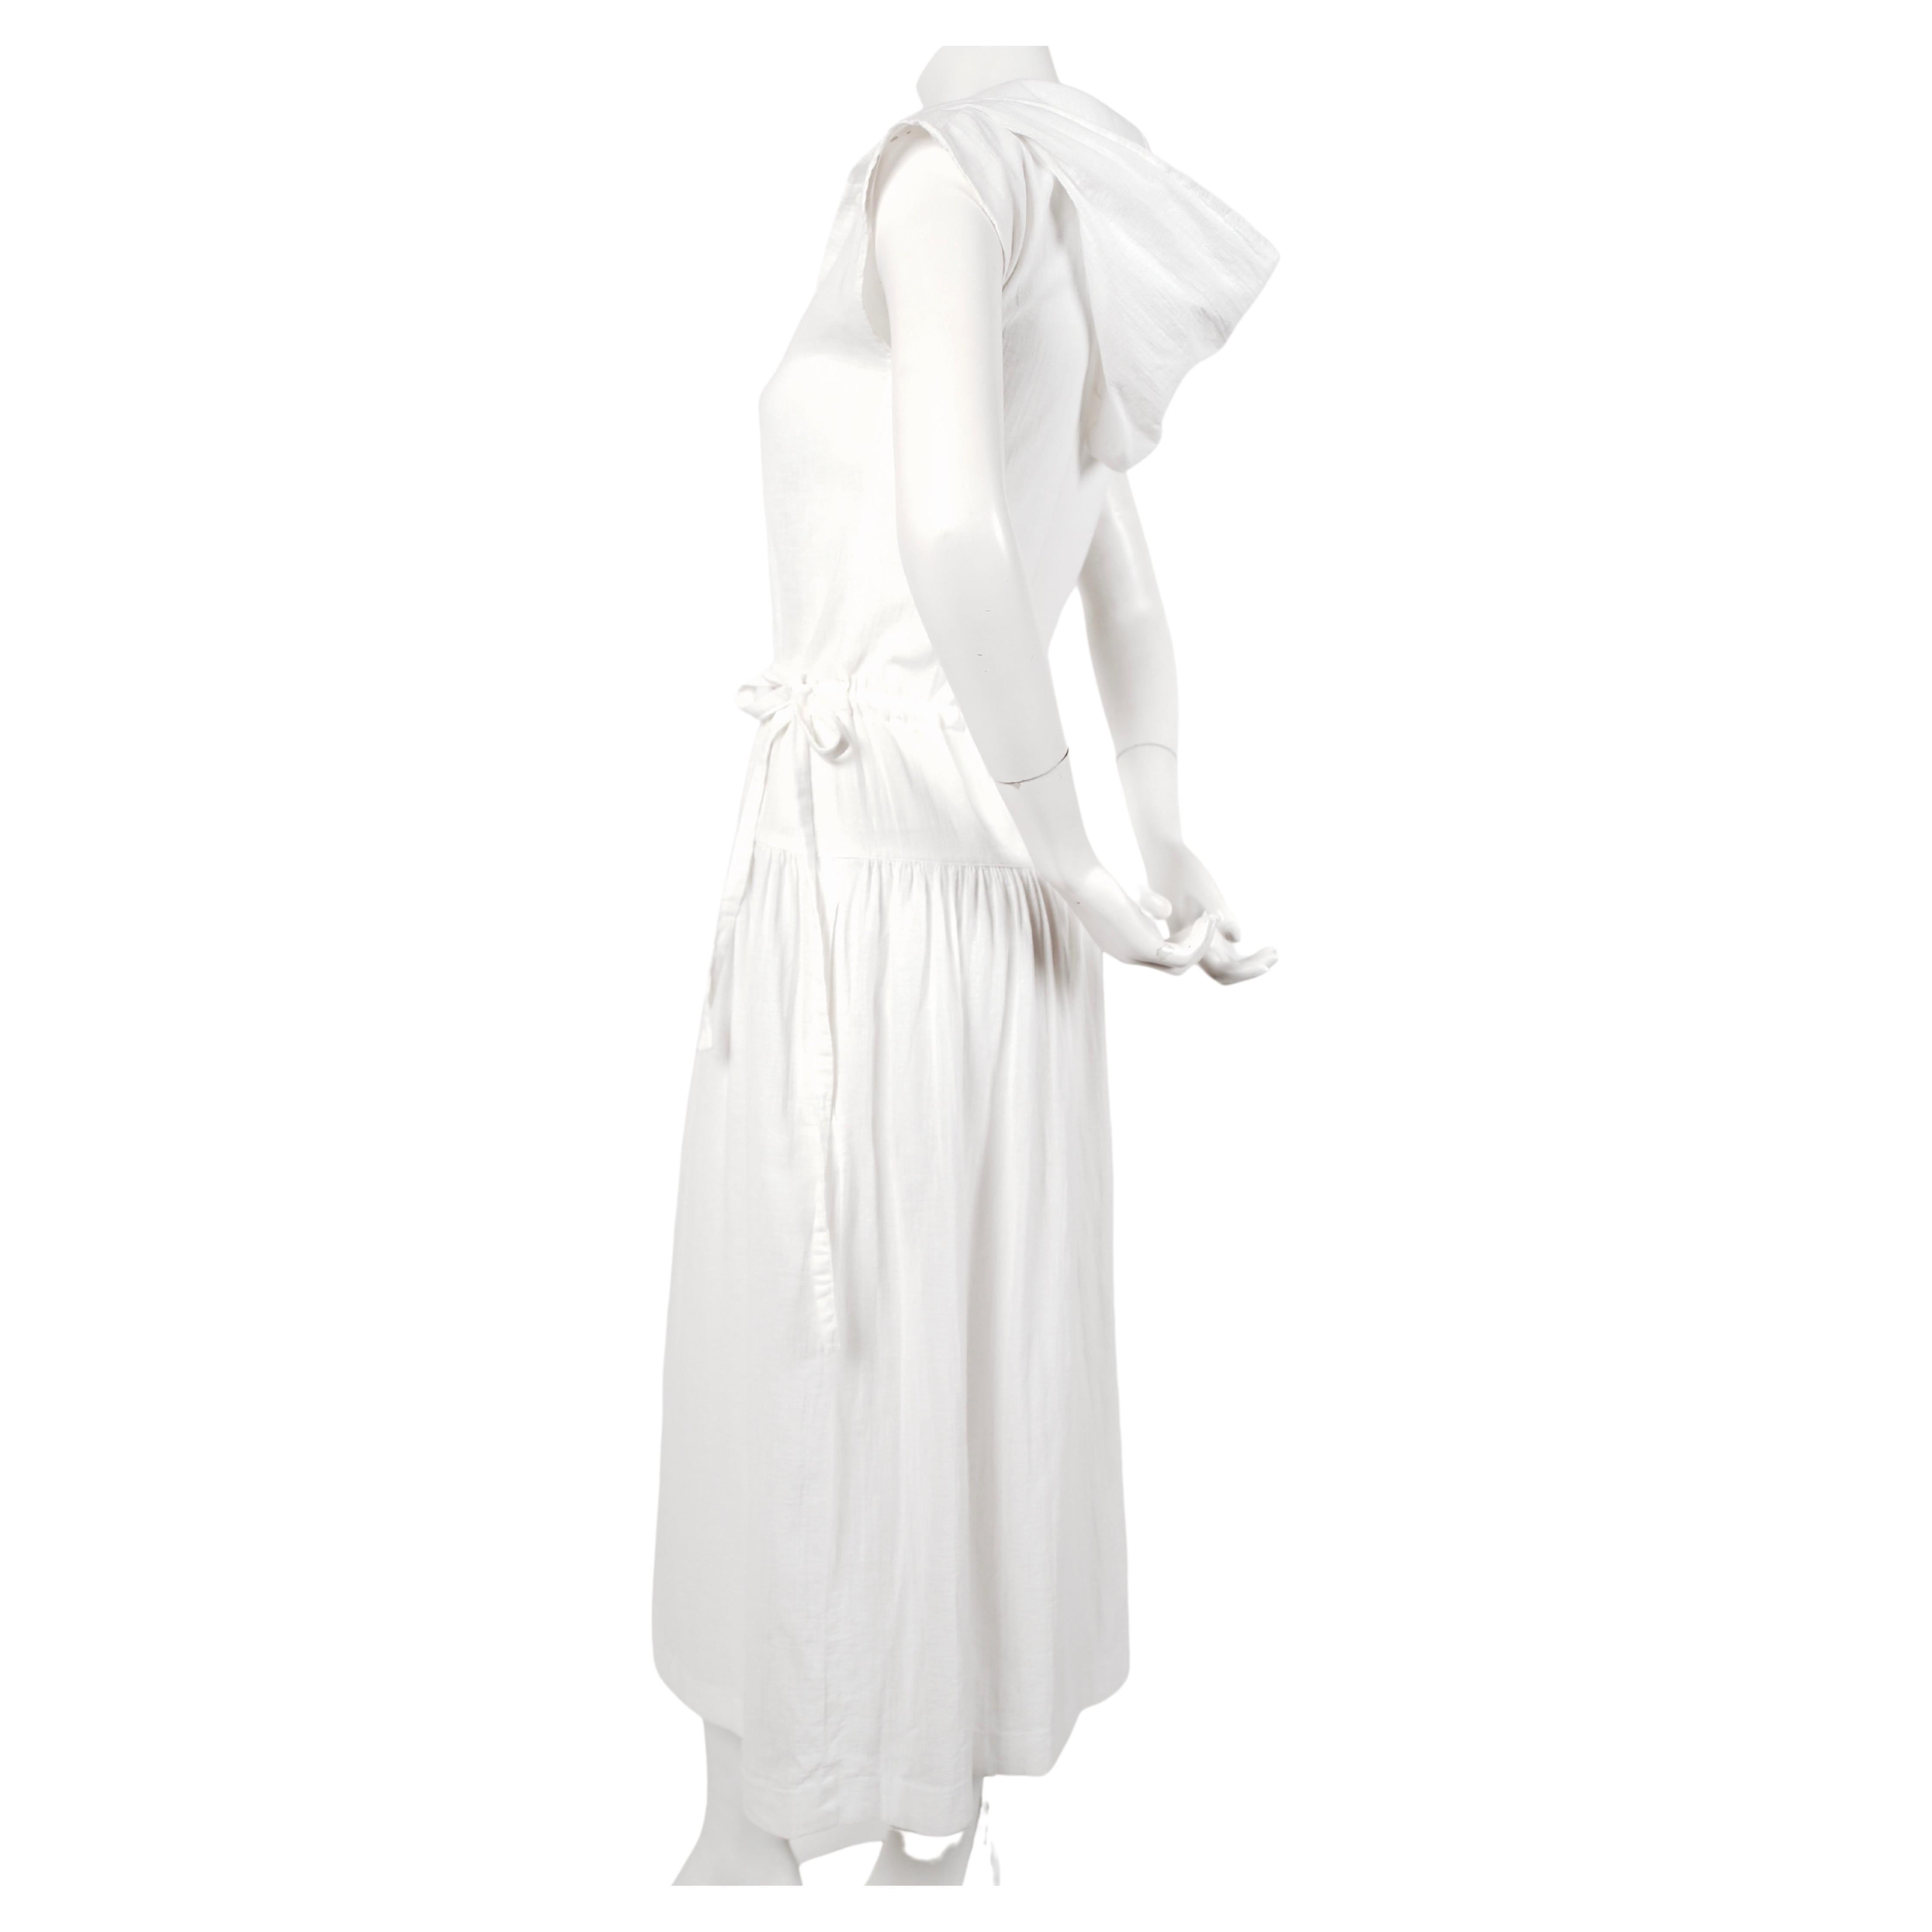 Weißes Kleid mit gauzefarbener Vordertasche, Kordelzug an der Taille, Kapuzenärmeln und Kapuze, entworfen von Cacharel in den späten 1970er Jahren. Gekennzeichnet mit FR 38, passt aber am besten zu einem FR 34-36 oder US 2. Ungefähre Maße: Brust